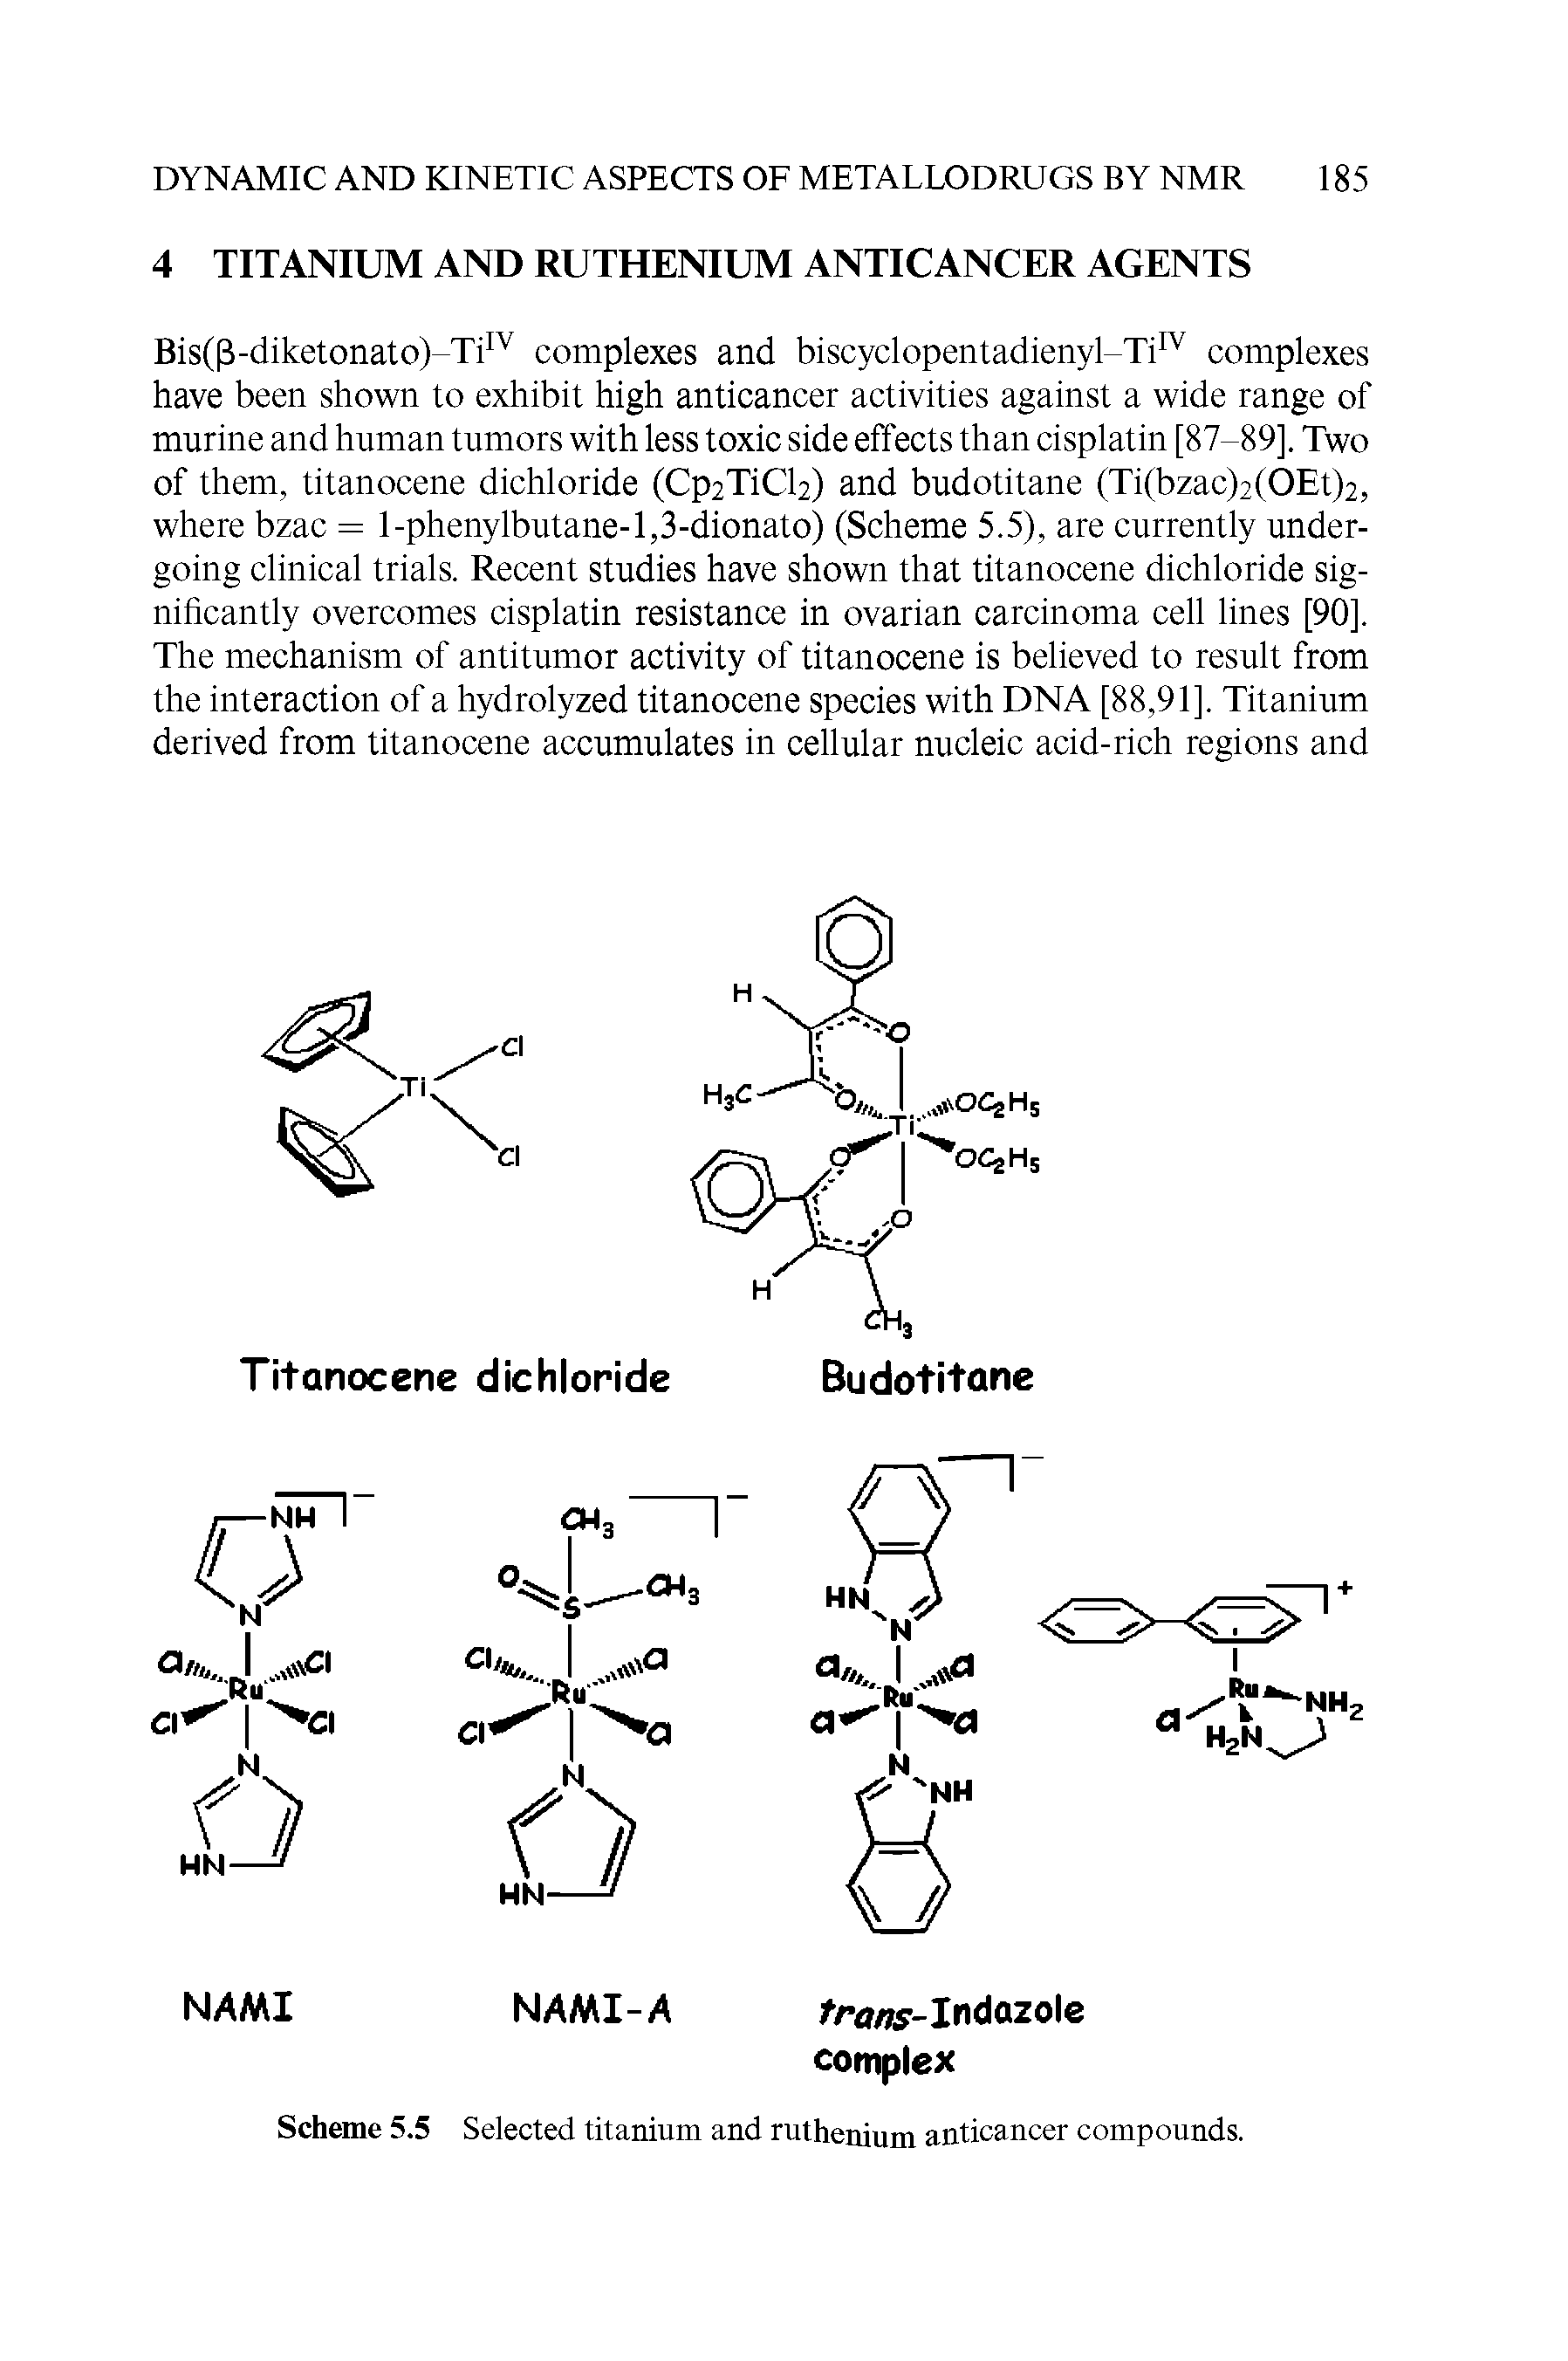 Scheme 5.5 Selected titanium and ruthenium anticancer compounds.